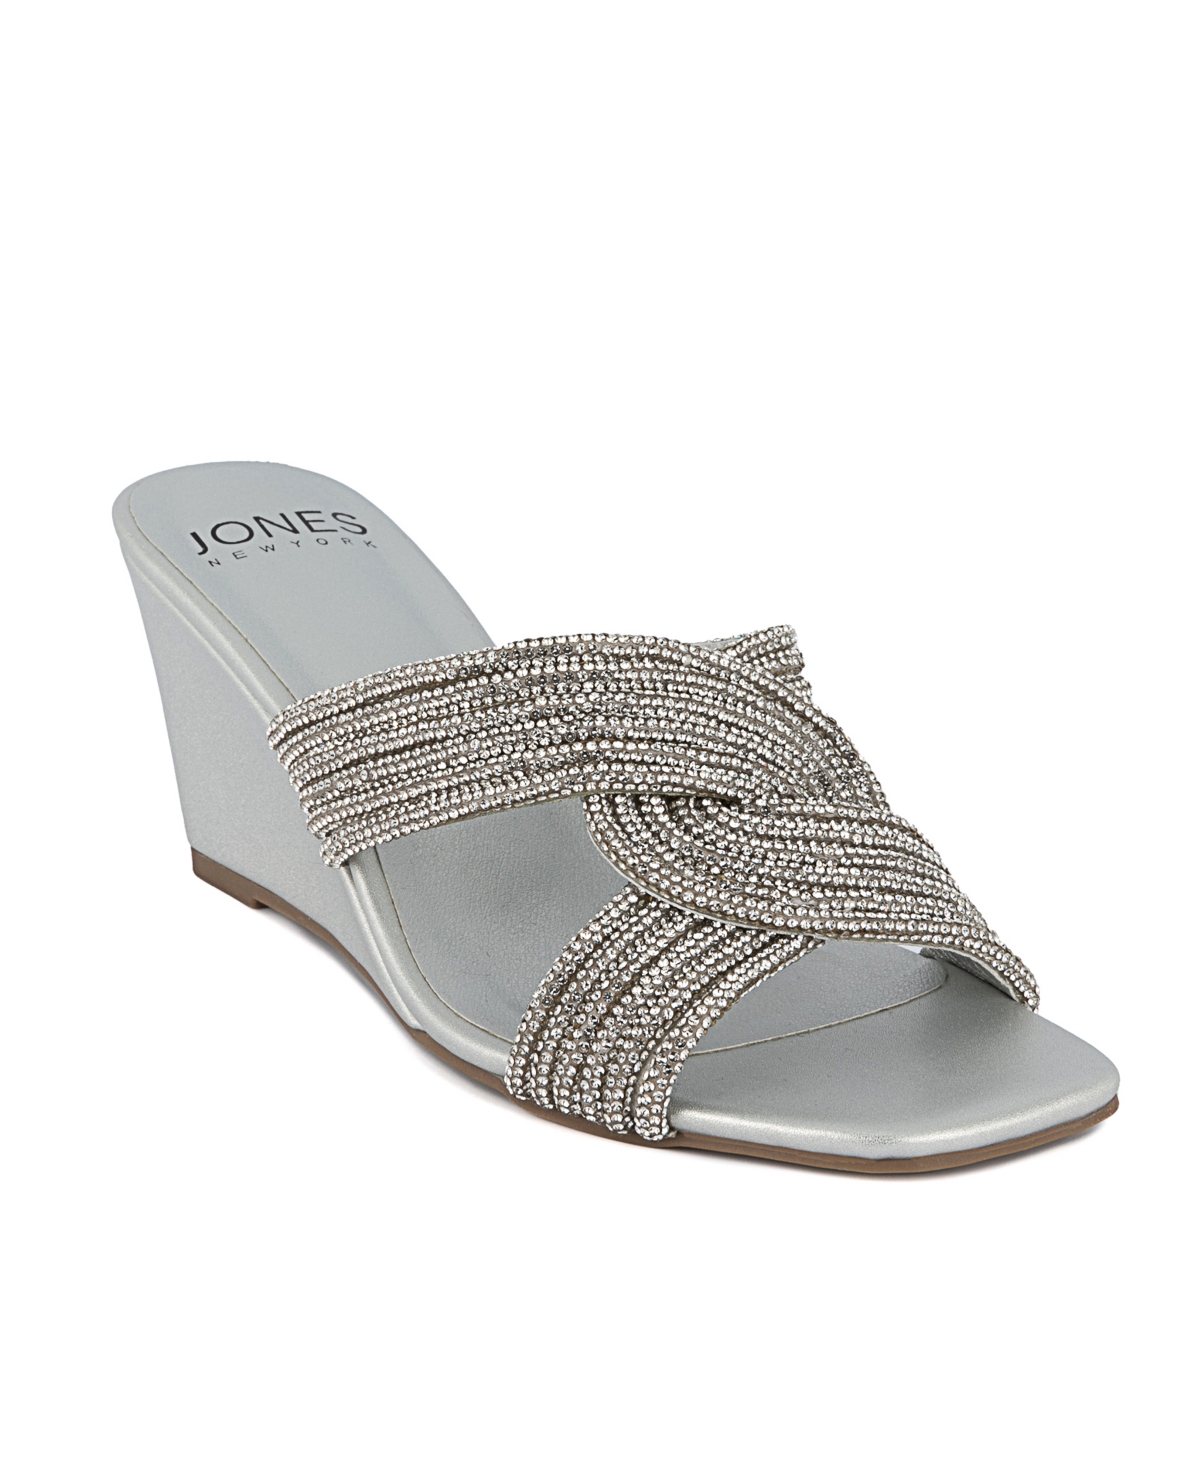 Jones New York Women's Irebbo Wedge Dress Sandals In Silver